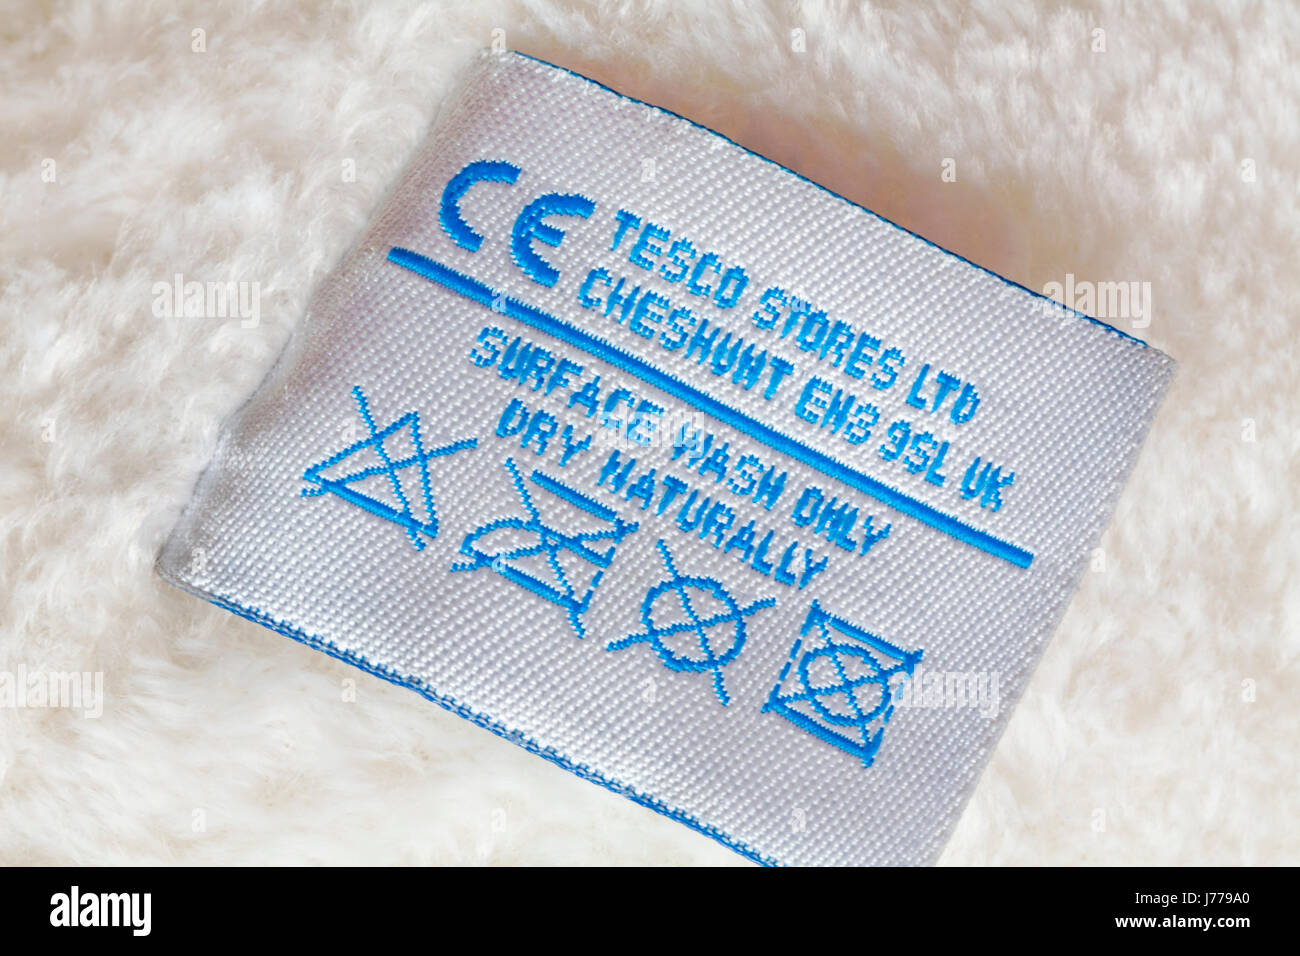 Informations sur l'étiquette - laver la surface sécher naturellement seulement dans l'étiquette ours par Tesco Stores Ltd et d'afficher les instructions de lavage Banque D'Images